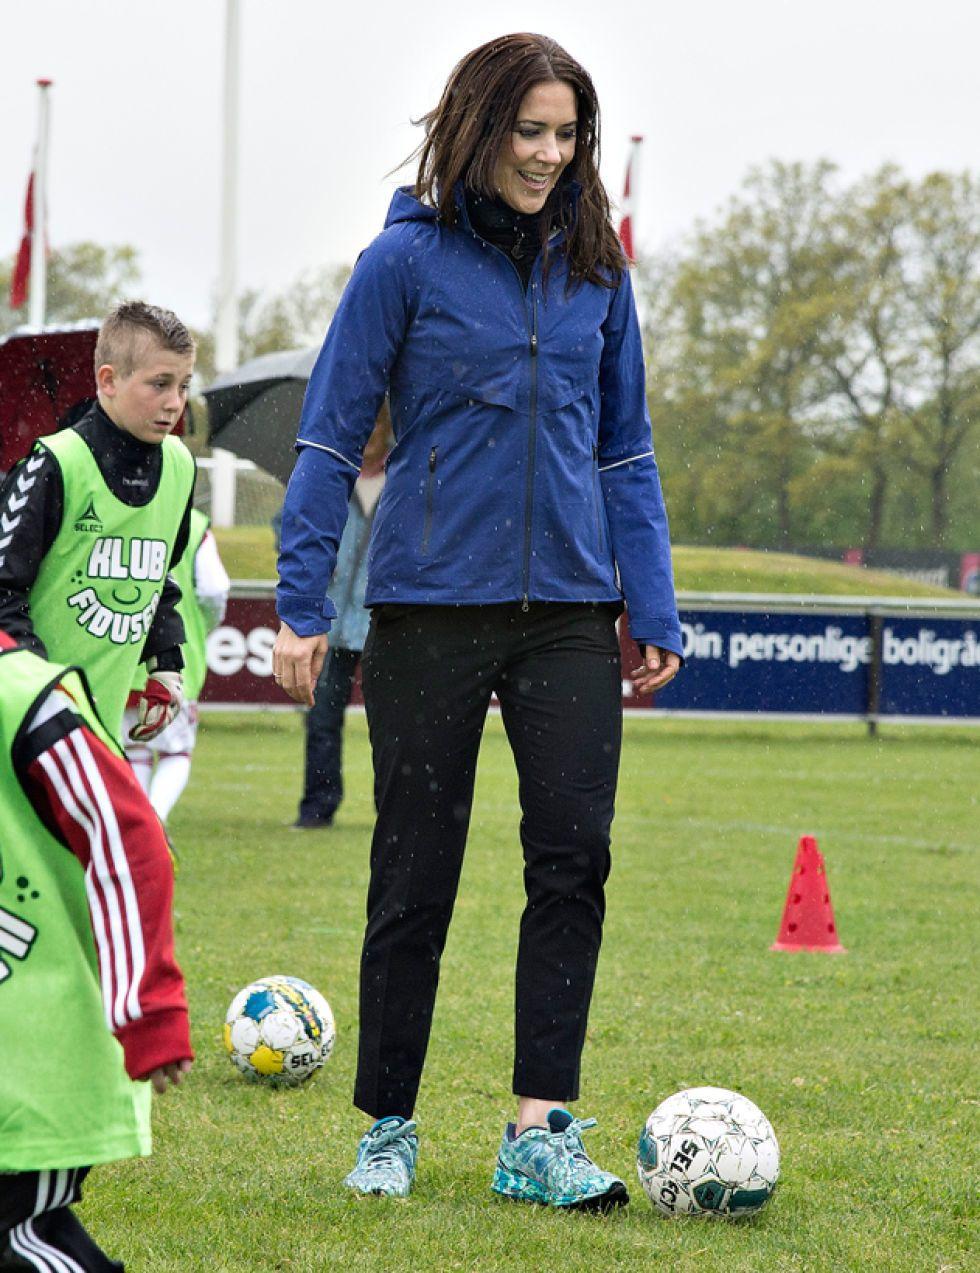 La princesa Mary de Dinamarca se pasa al fútbol y demuestra su habilidad con el balón